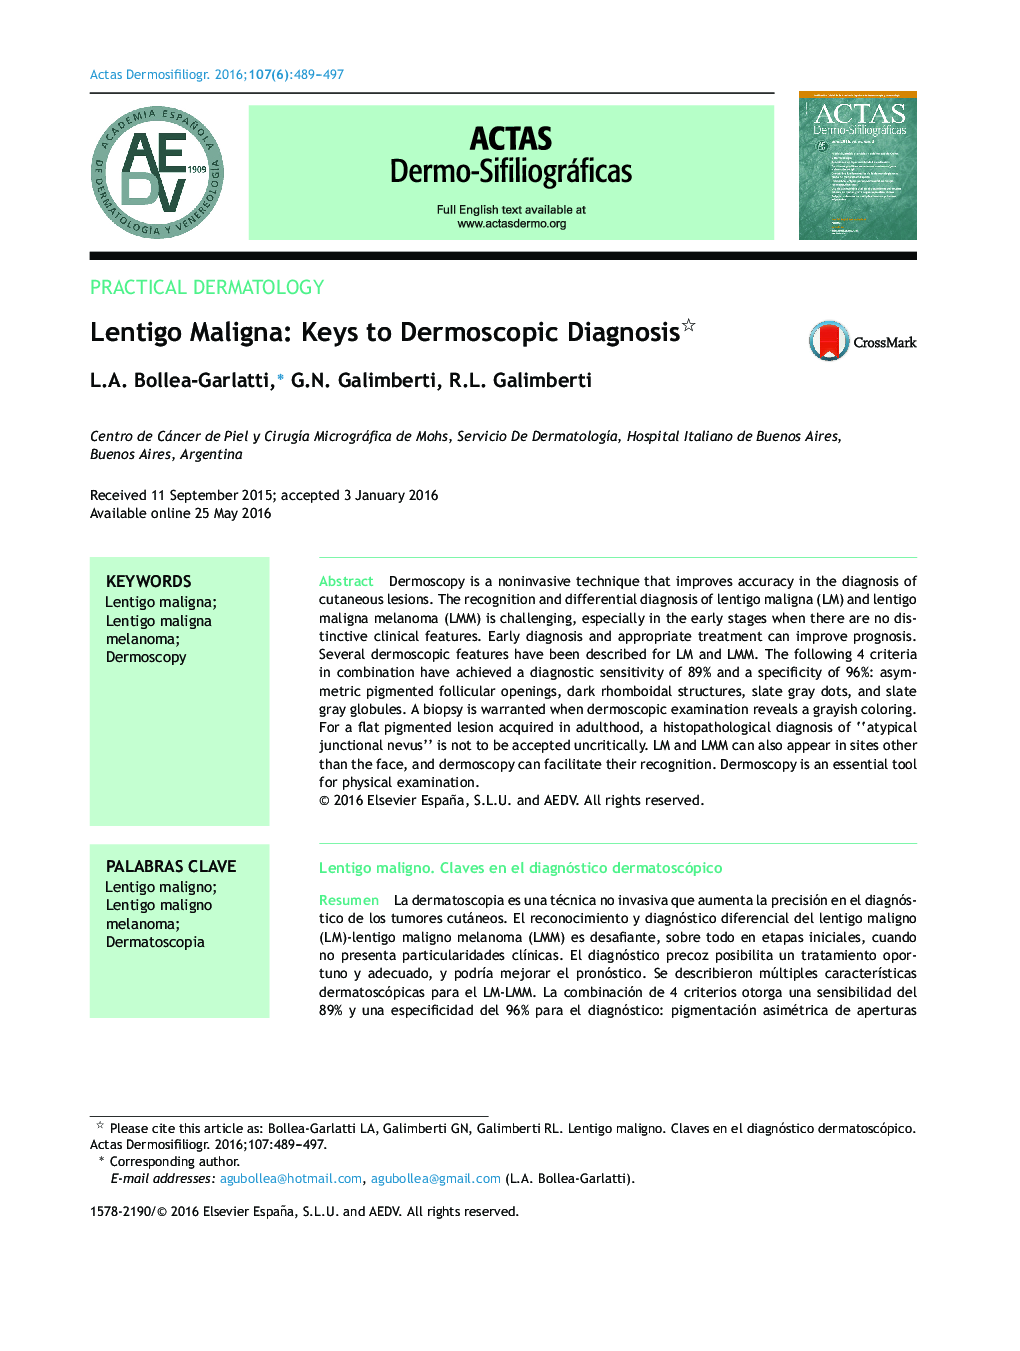 Lentigo Maligna: Keys to Dermoscopic Diagnosis 